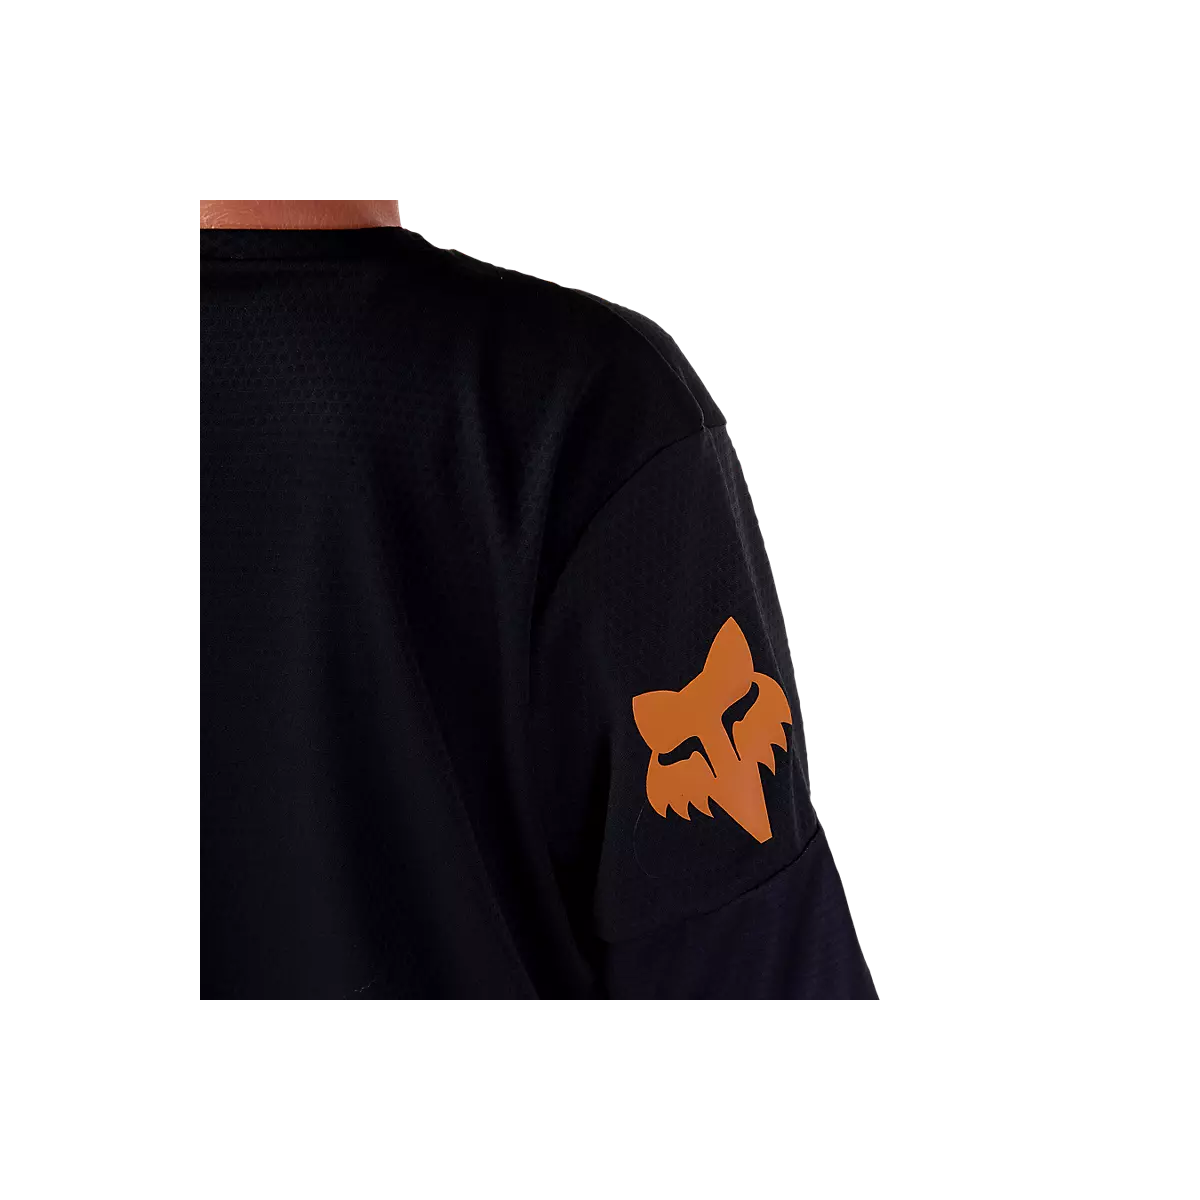 Detalle fox naranja de la Camiseta manga larga Fox Defend Race negro/marrón niño 6-14 años